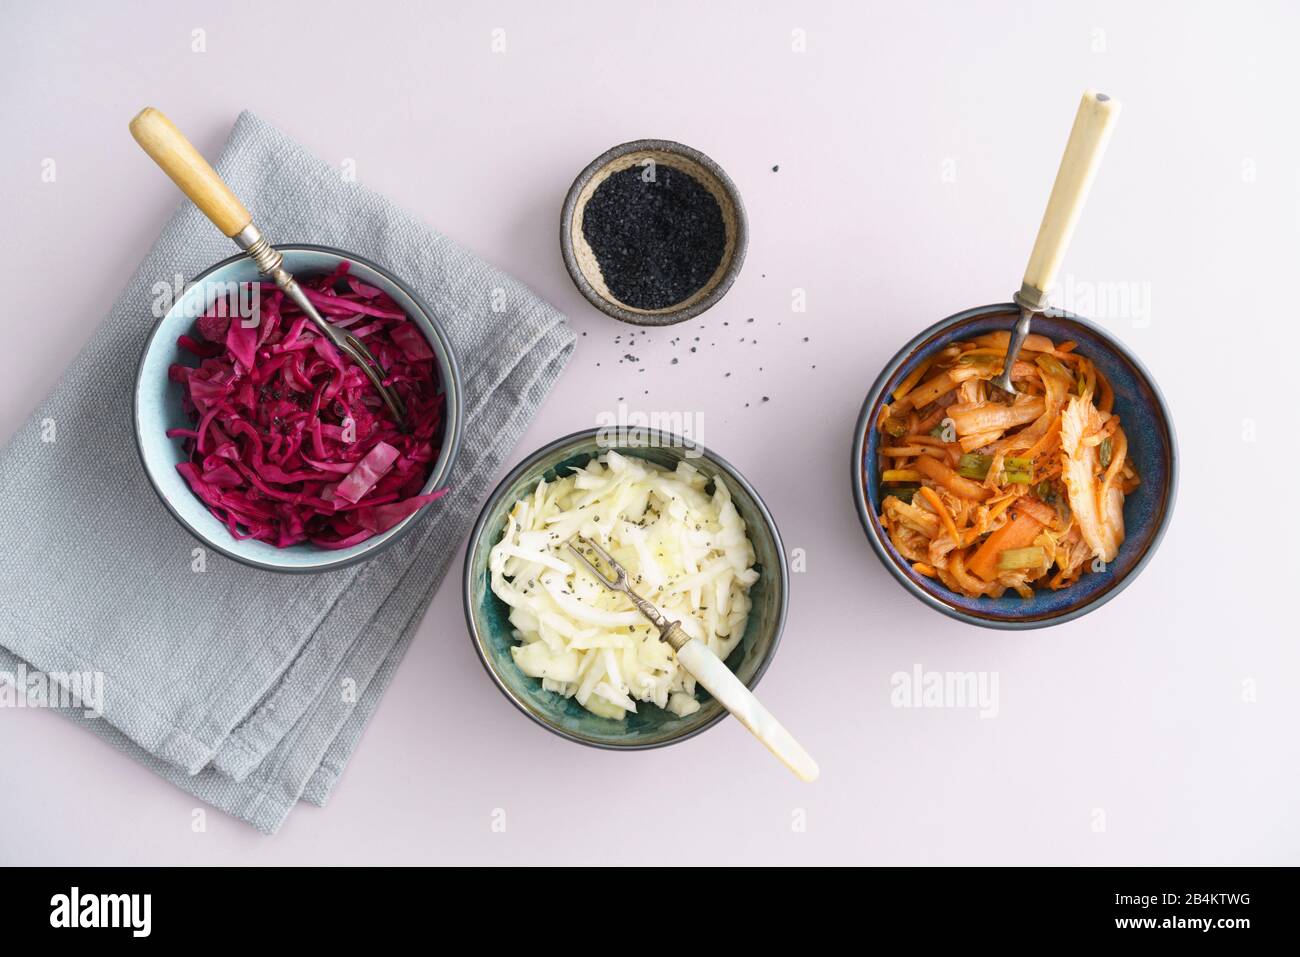 Chou blanc, kimchi et chou rouge fermenté, mariné, servi dans de petits bols Banque D'Images